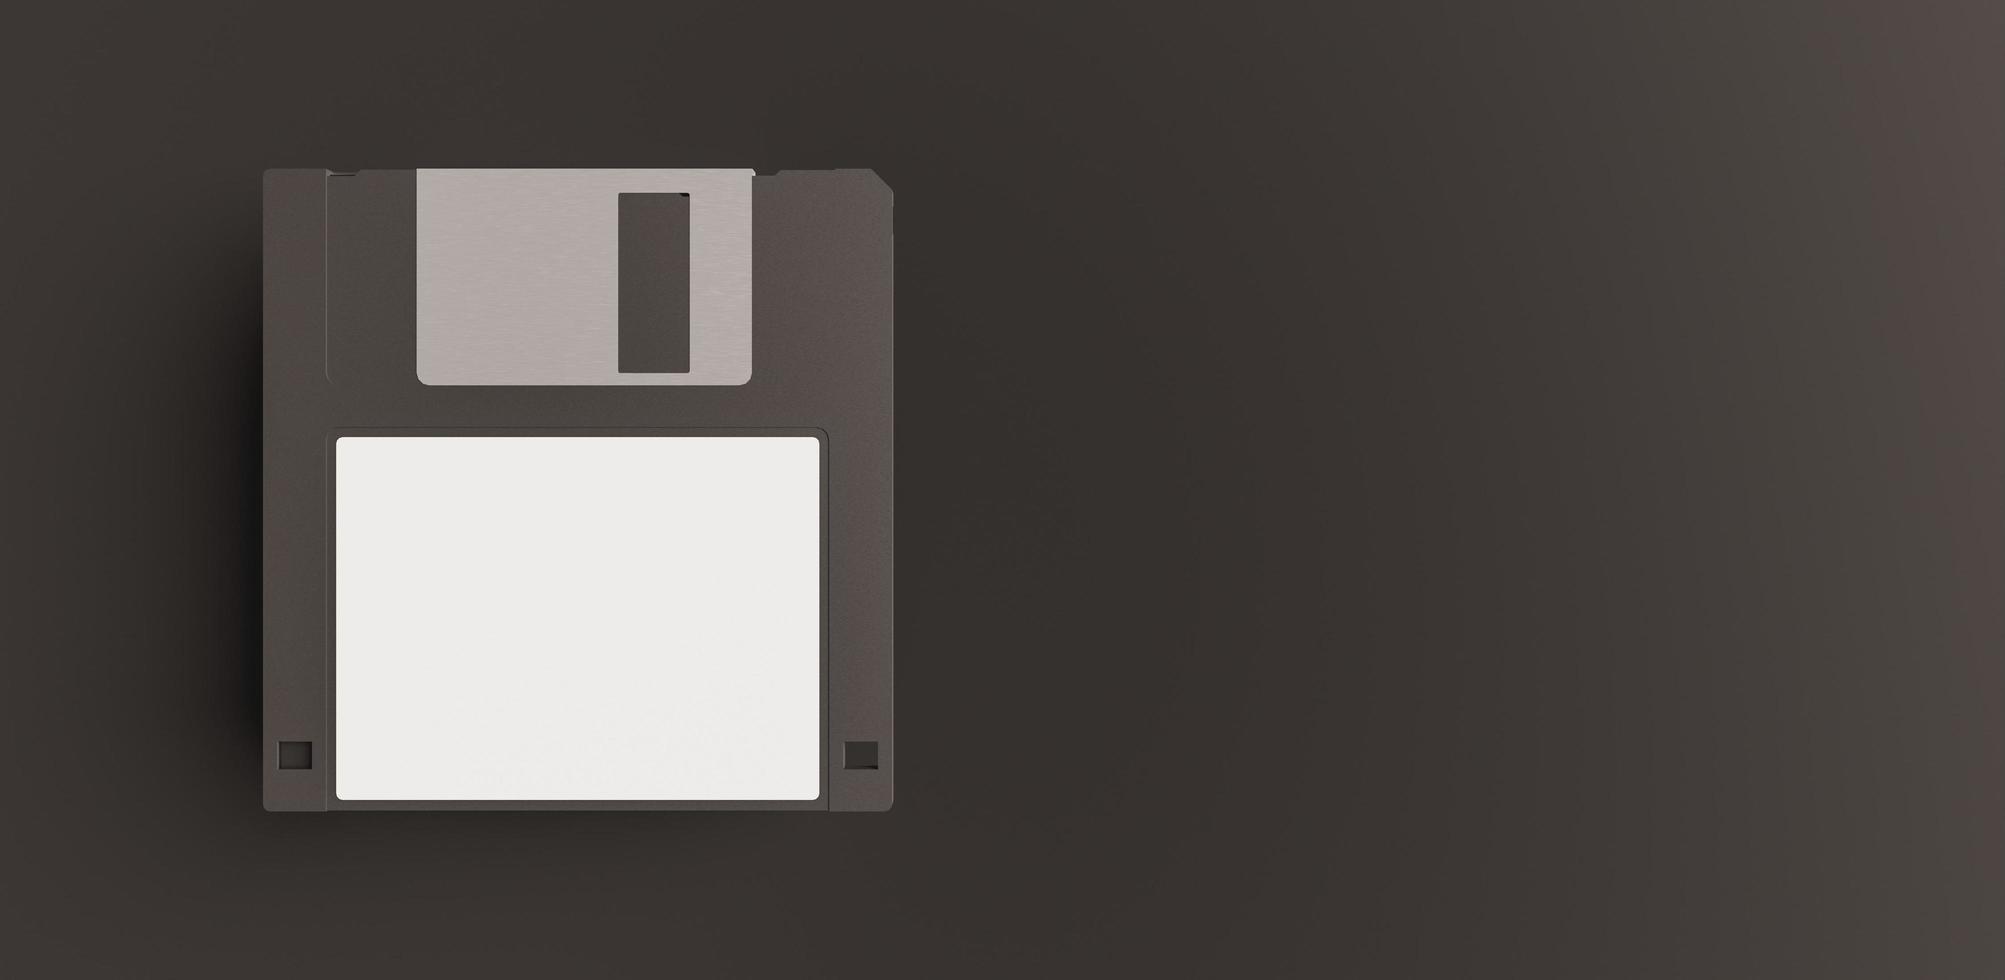 maqueta de disquete negro con etiqueta blanca foto